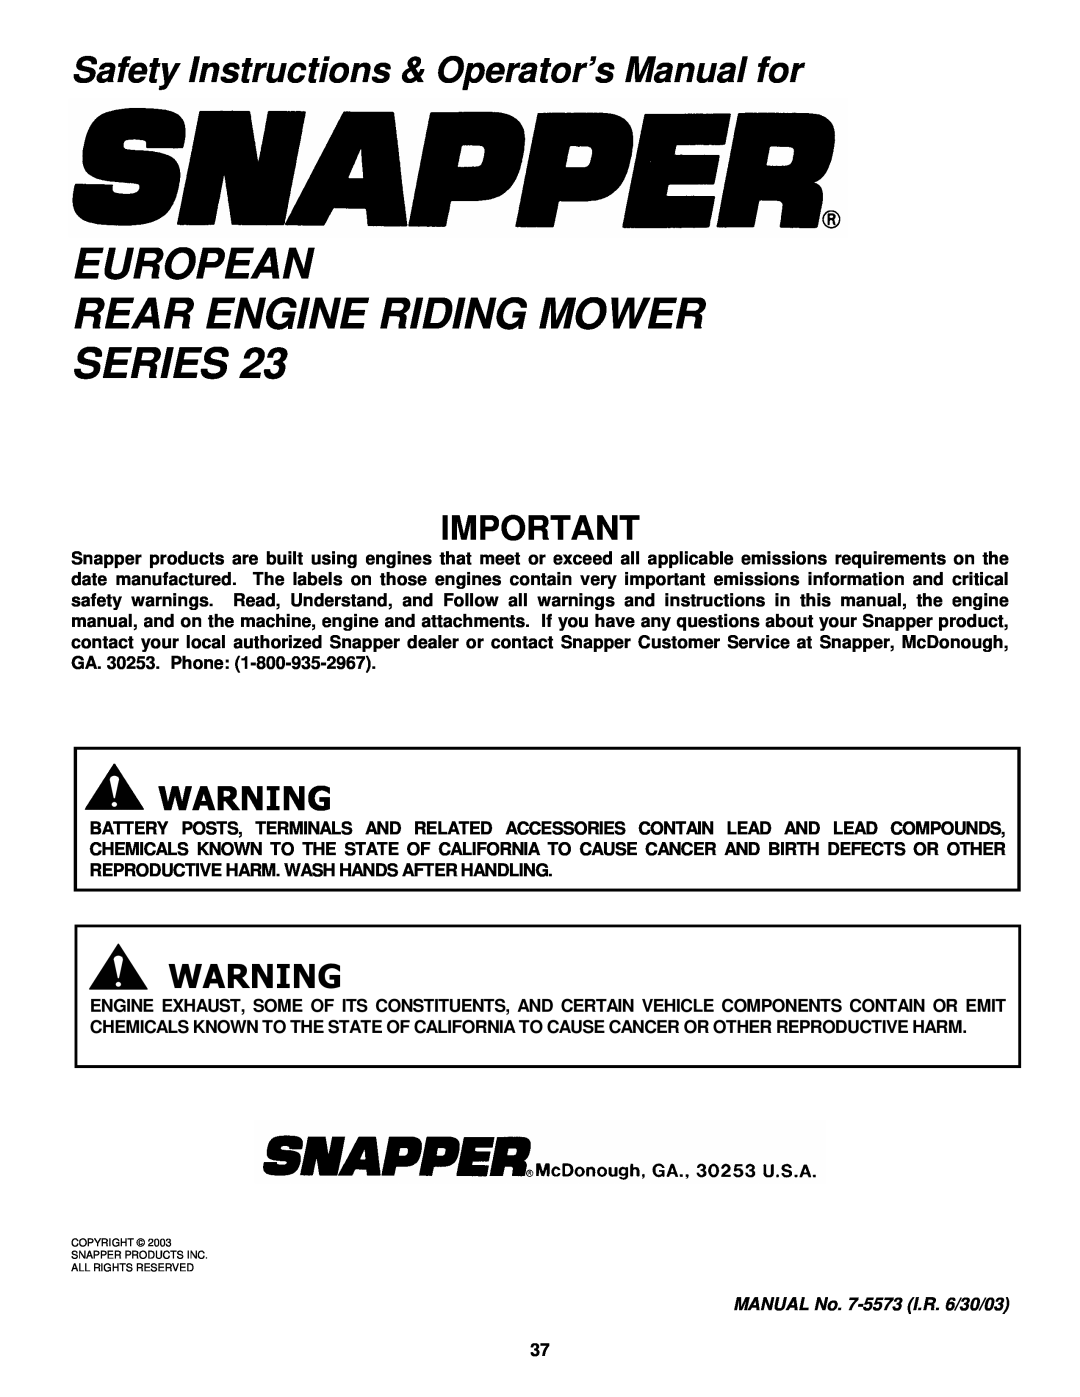 Snapper E281323BVE, E251023BVE, E281223BVE, E331523KVE European Rear Engine Riding Mower Series 